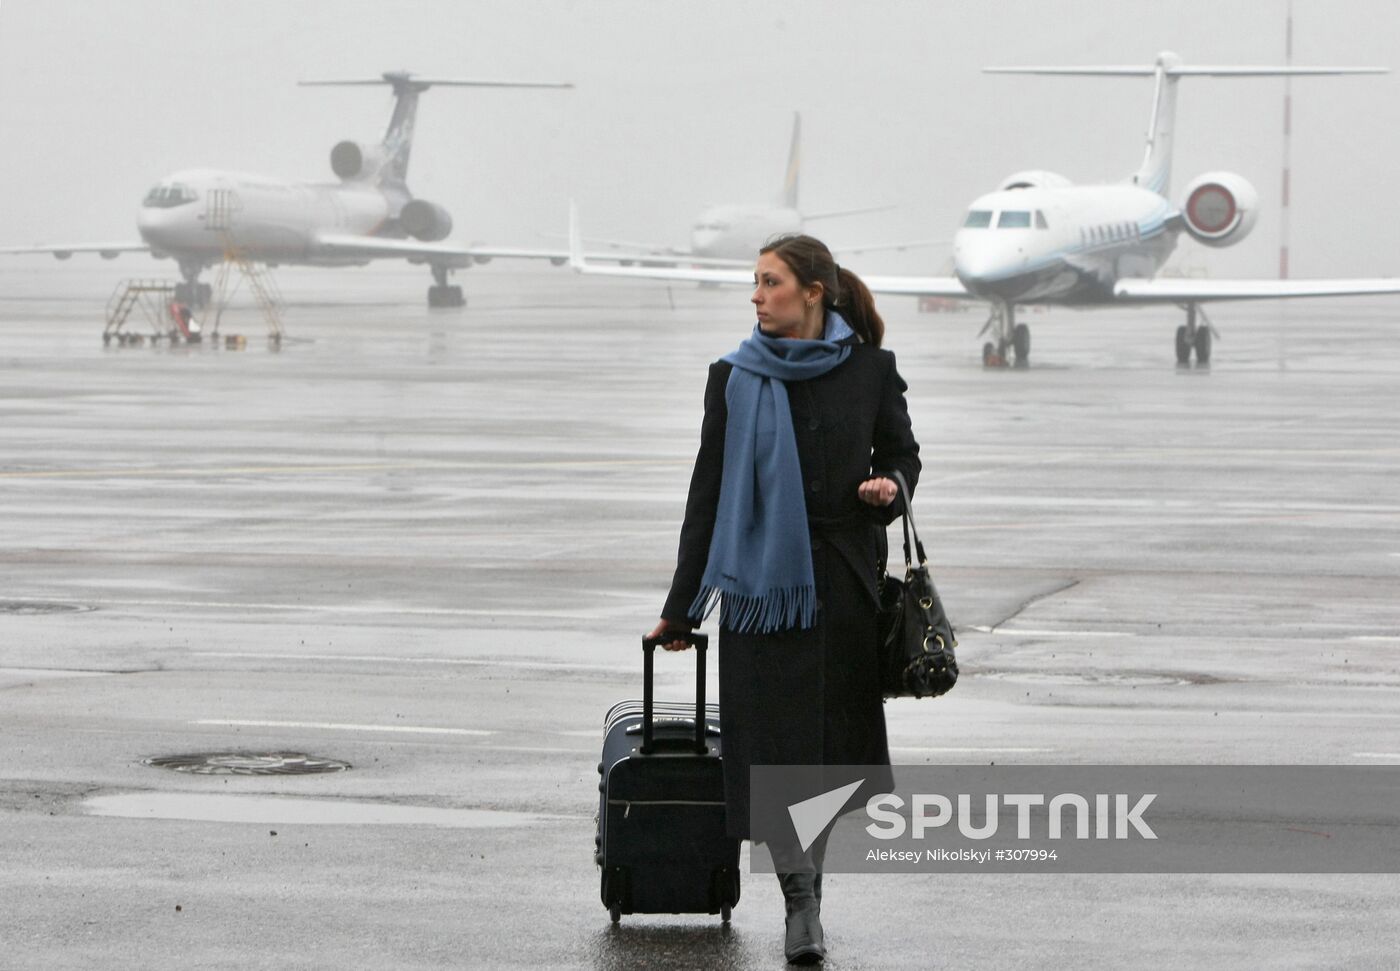 Sheremetyevo-1 airport